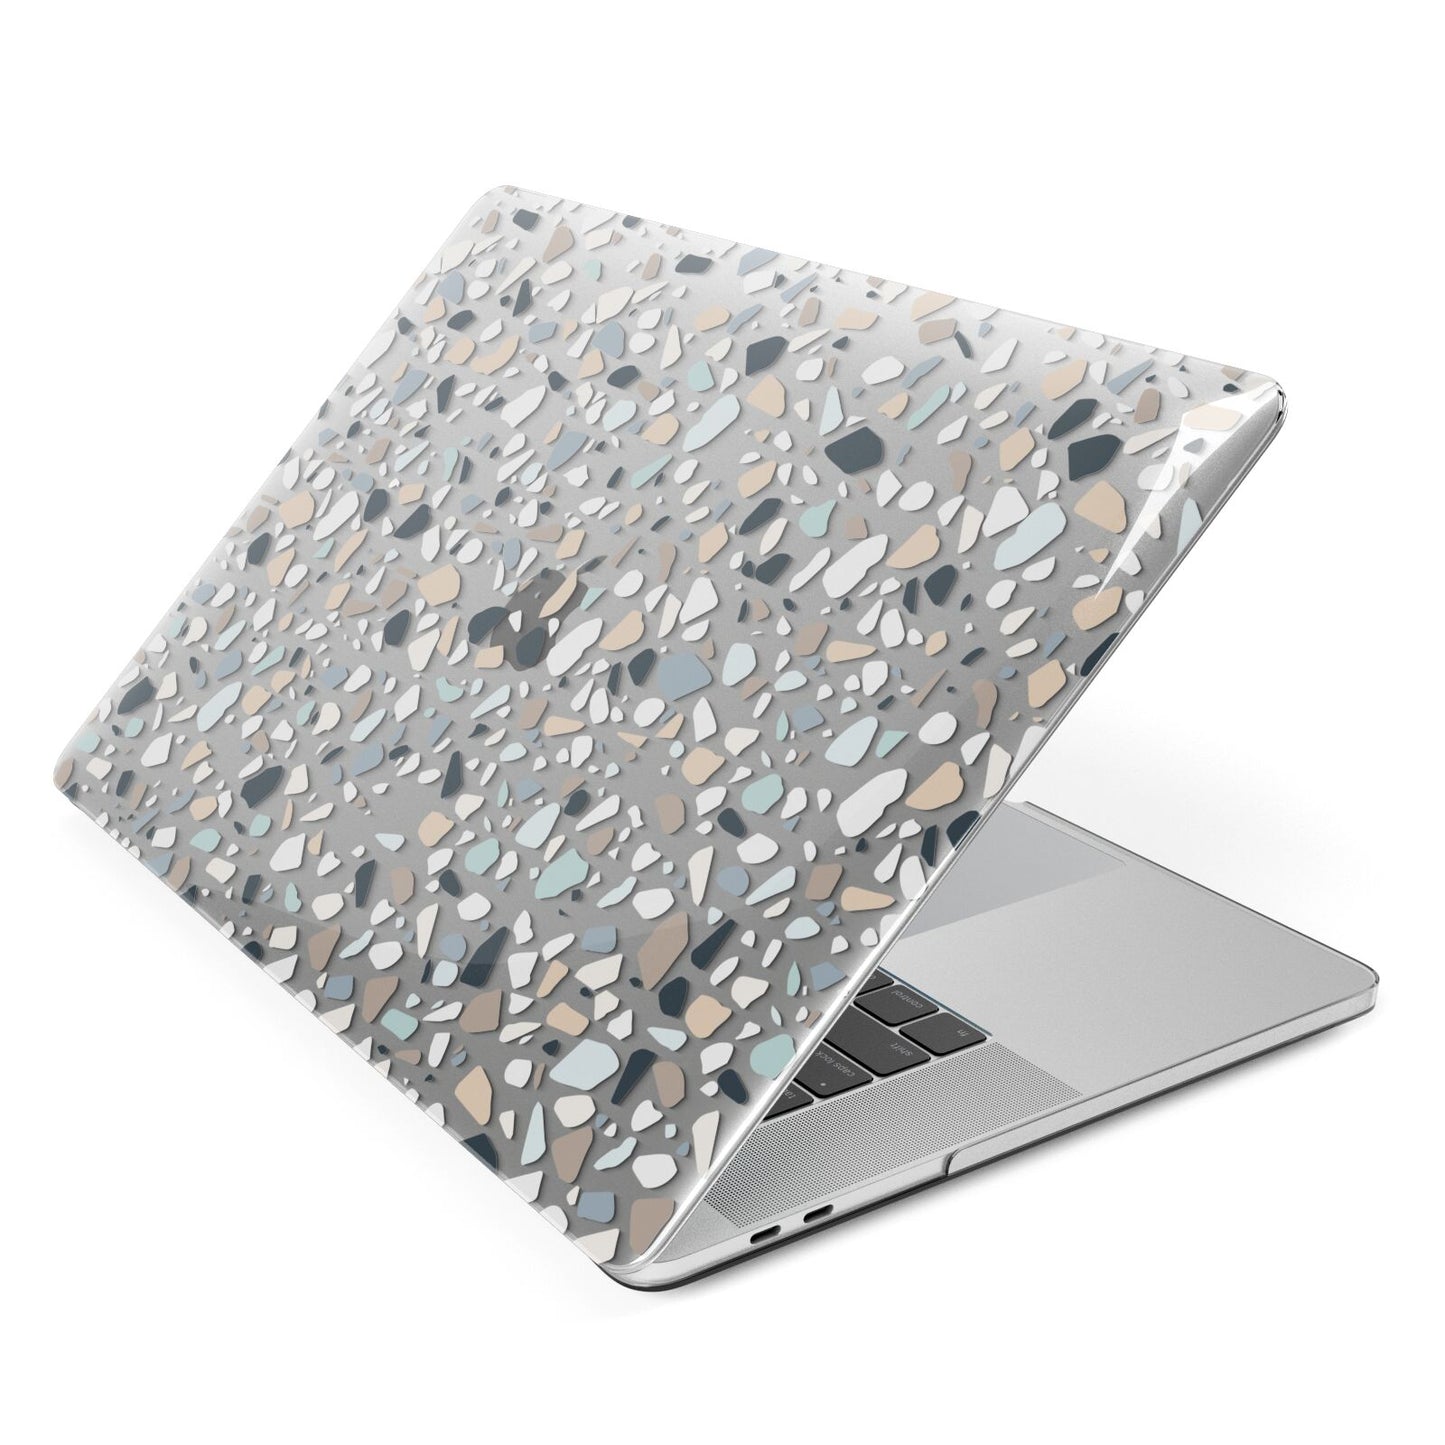 Terrazzo Pattern Apple MacBook Case Side View